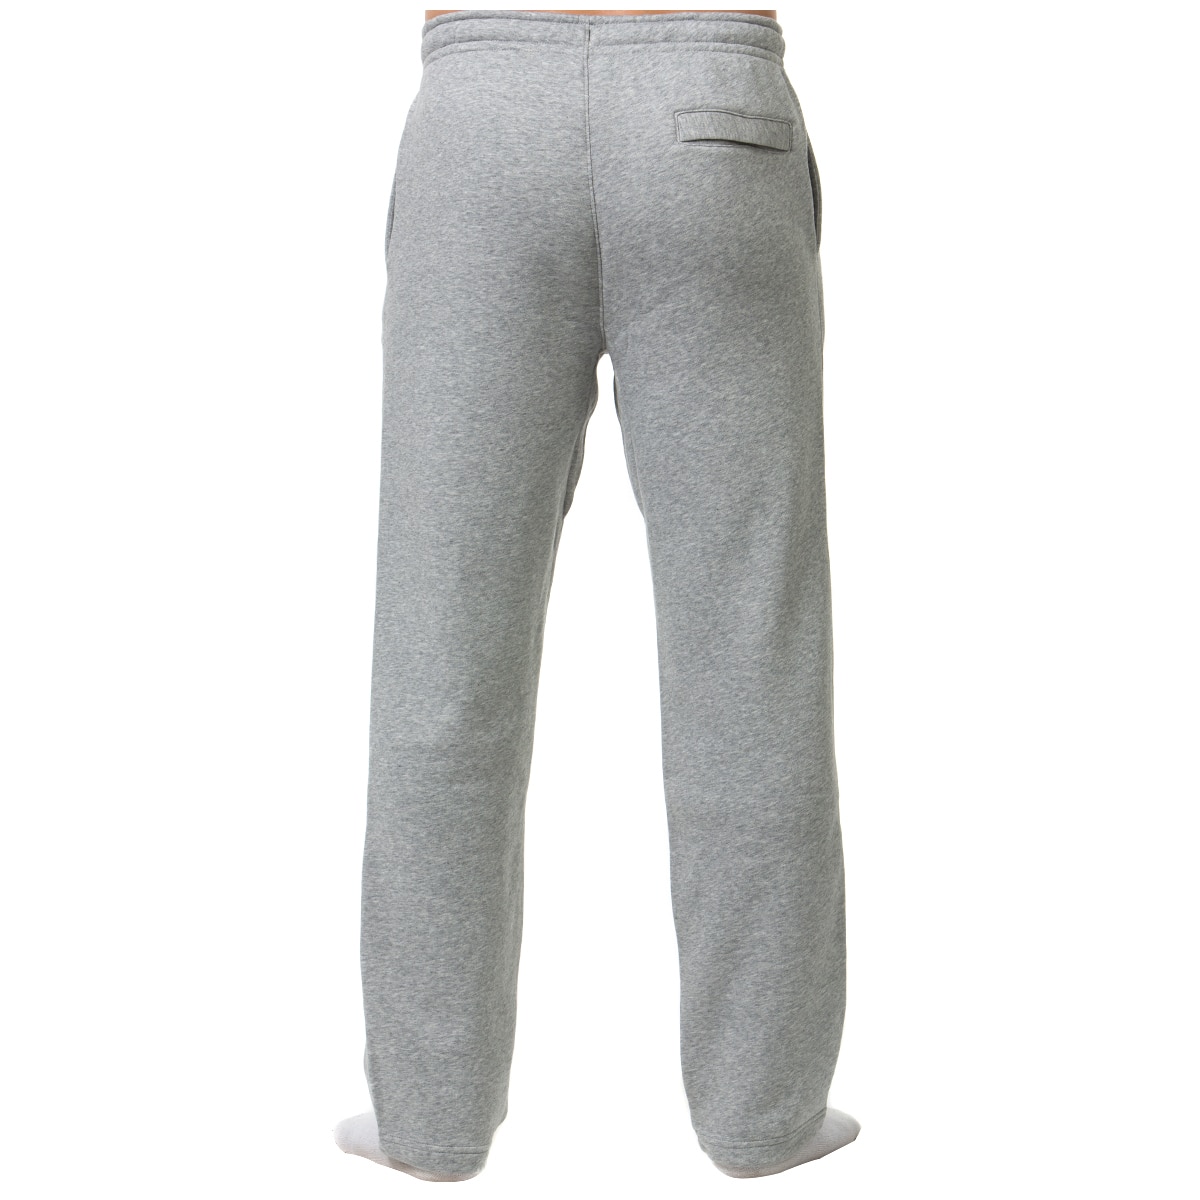 Nike Fleece Pant - Grey